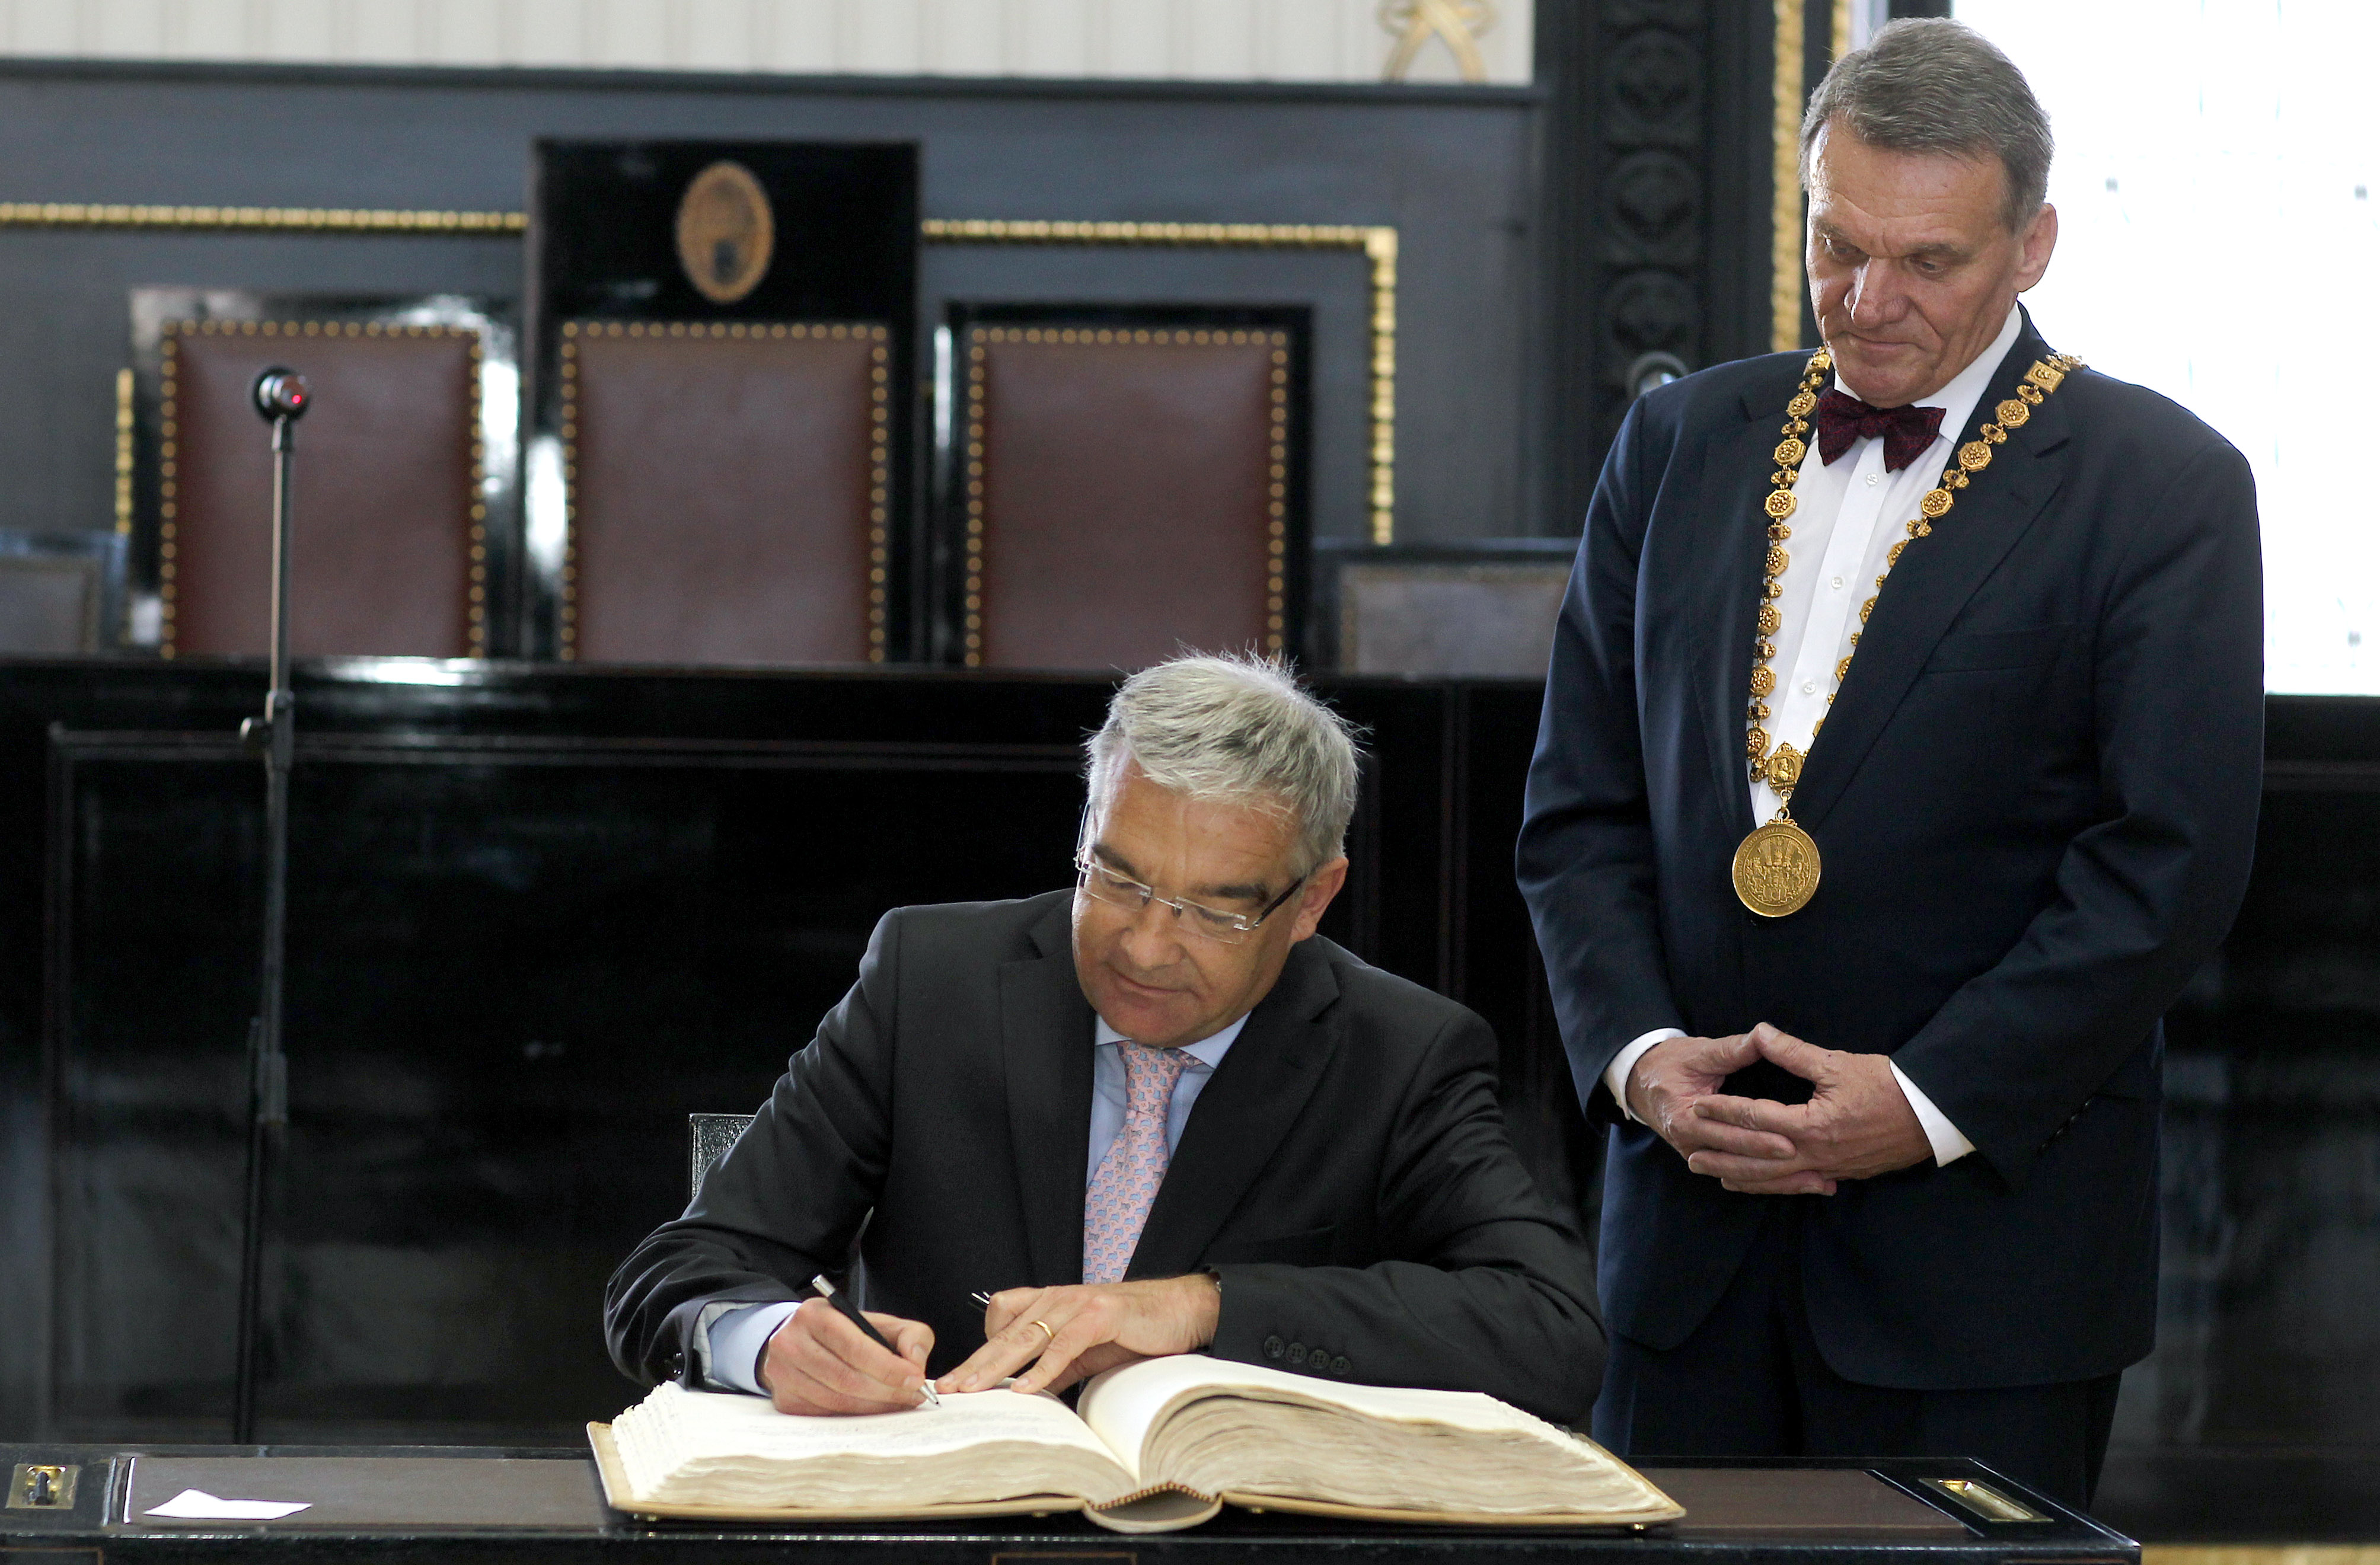 Pražský primátor Bohuslav Svoboda dnes přijal předsedu Poslanecké sněmovny Parlamentu Lucemburského